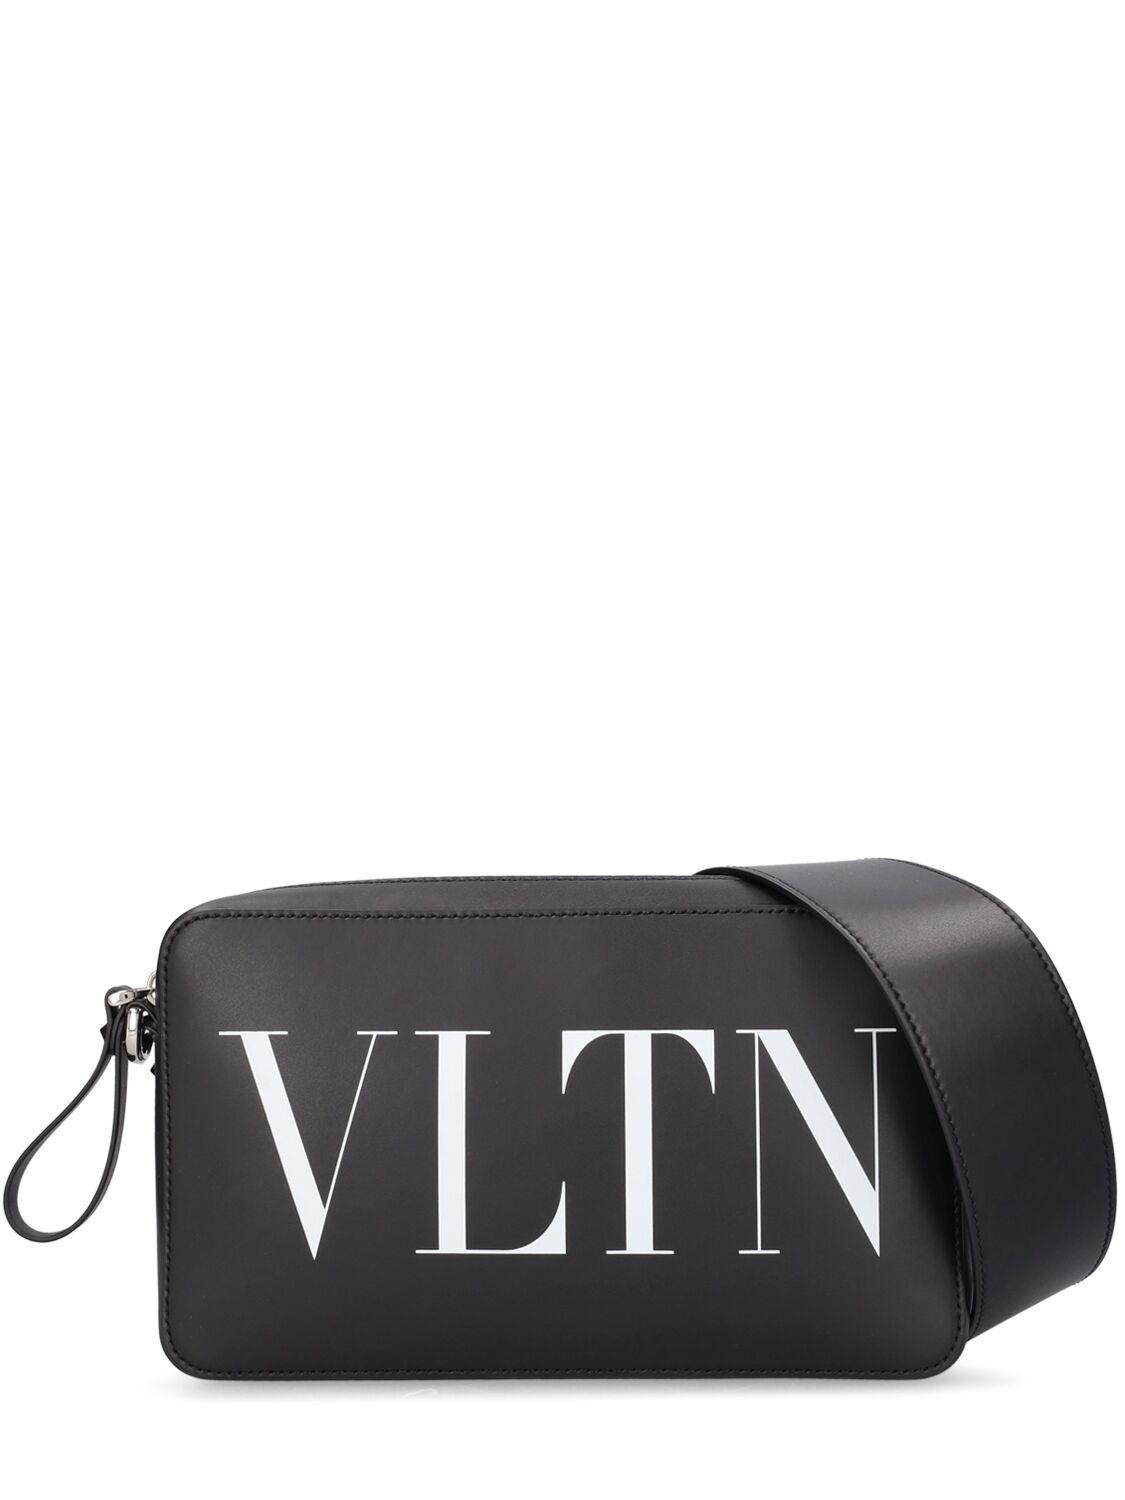 Valentino Garavani Vltn Print Crossbody Bag In Black,white